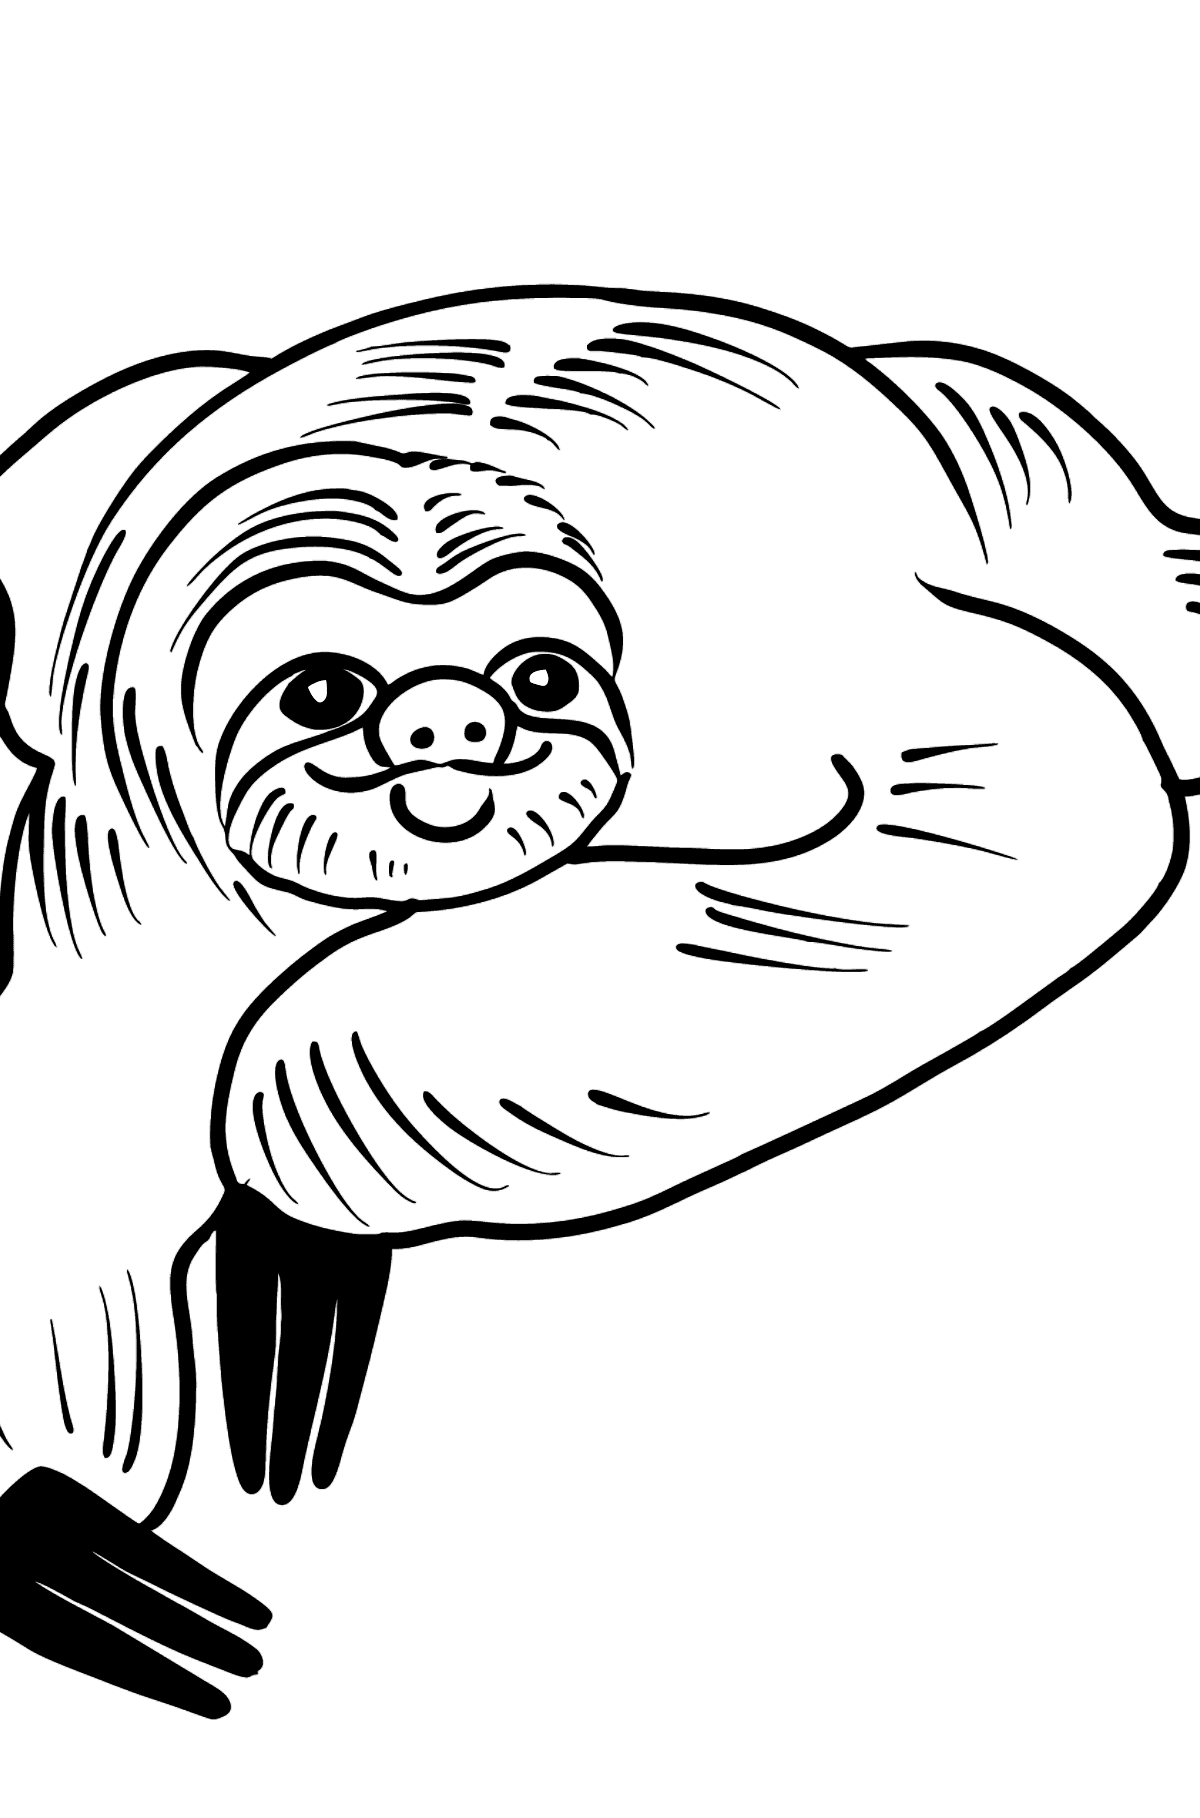 Раскраска ленивец - Картинки для Детей